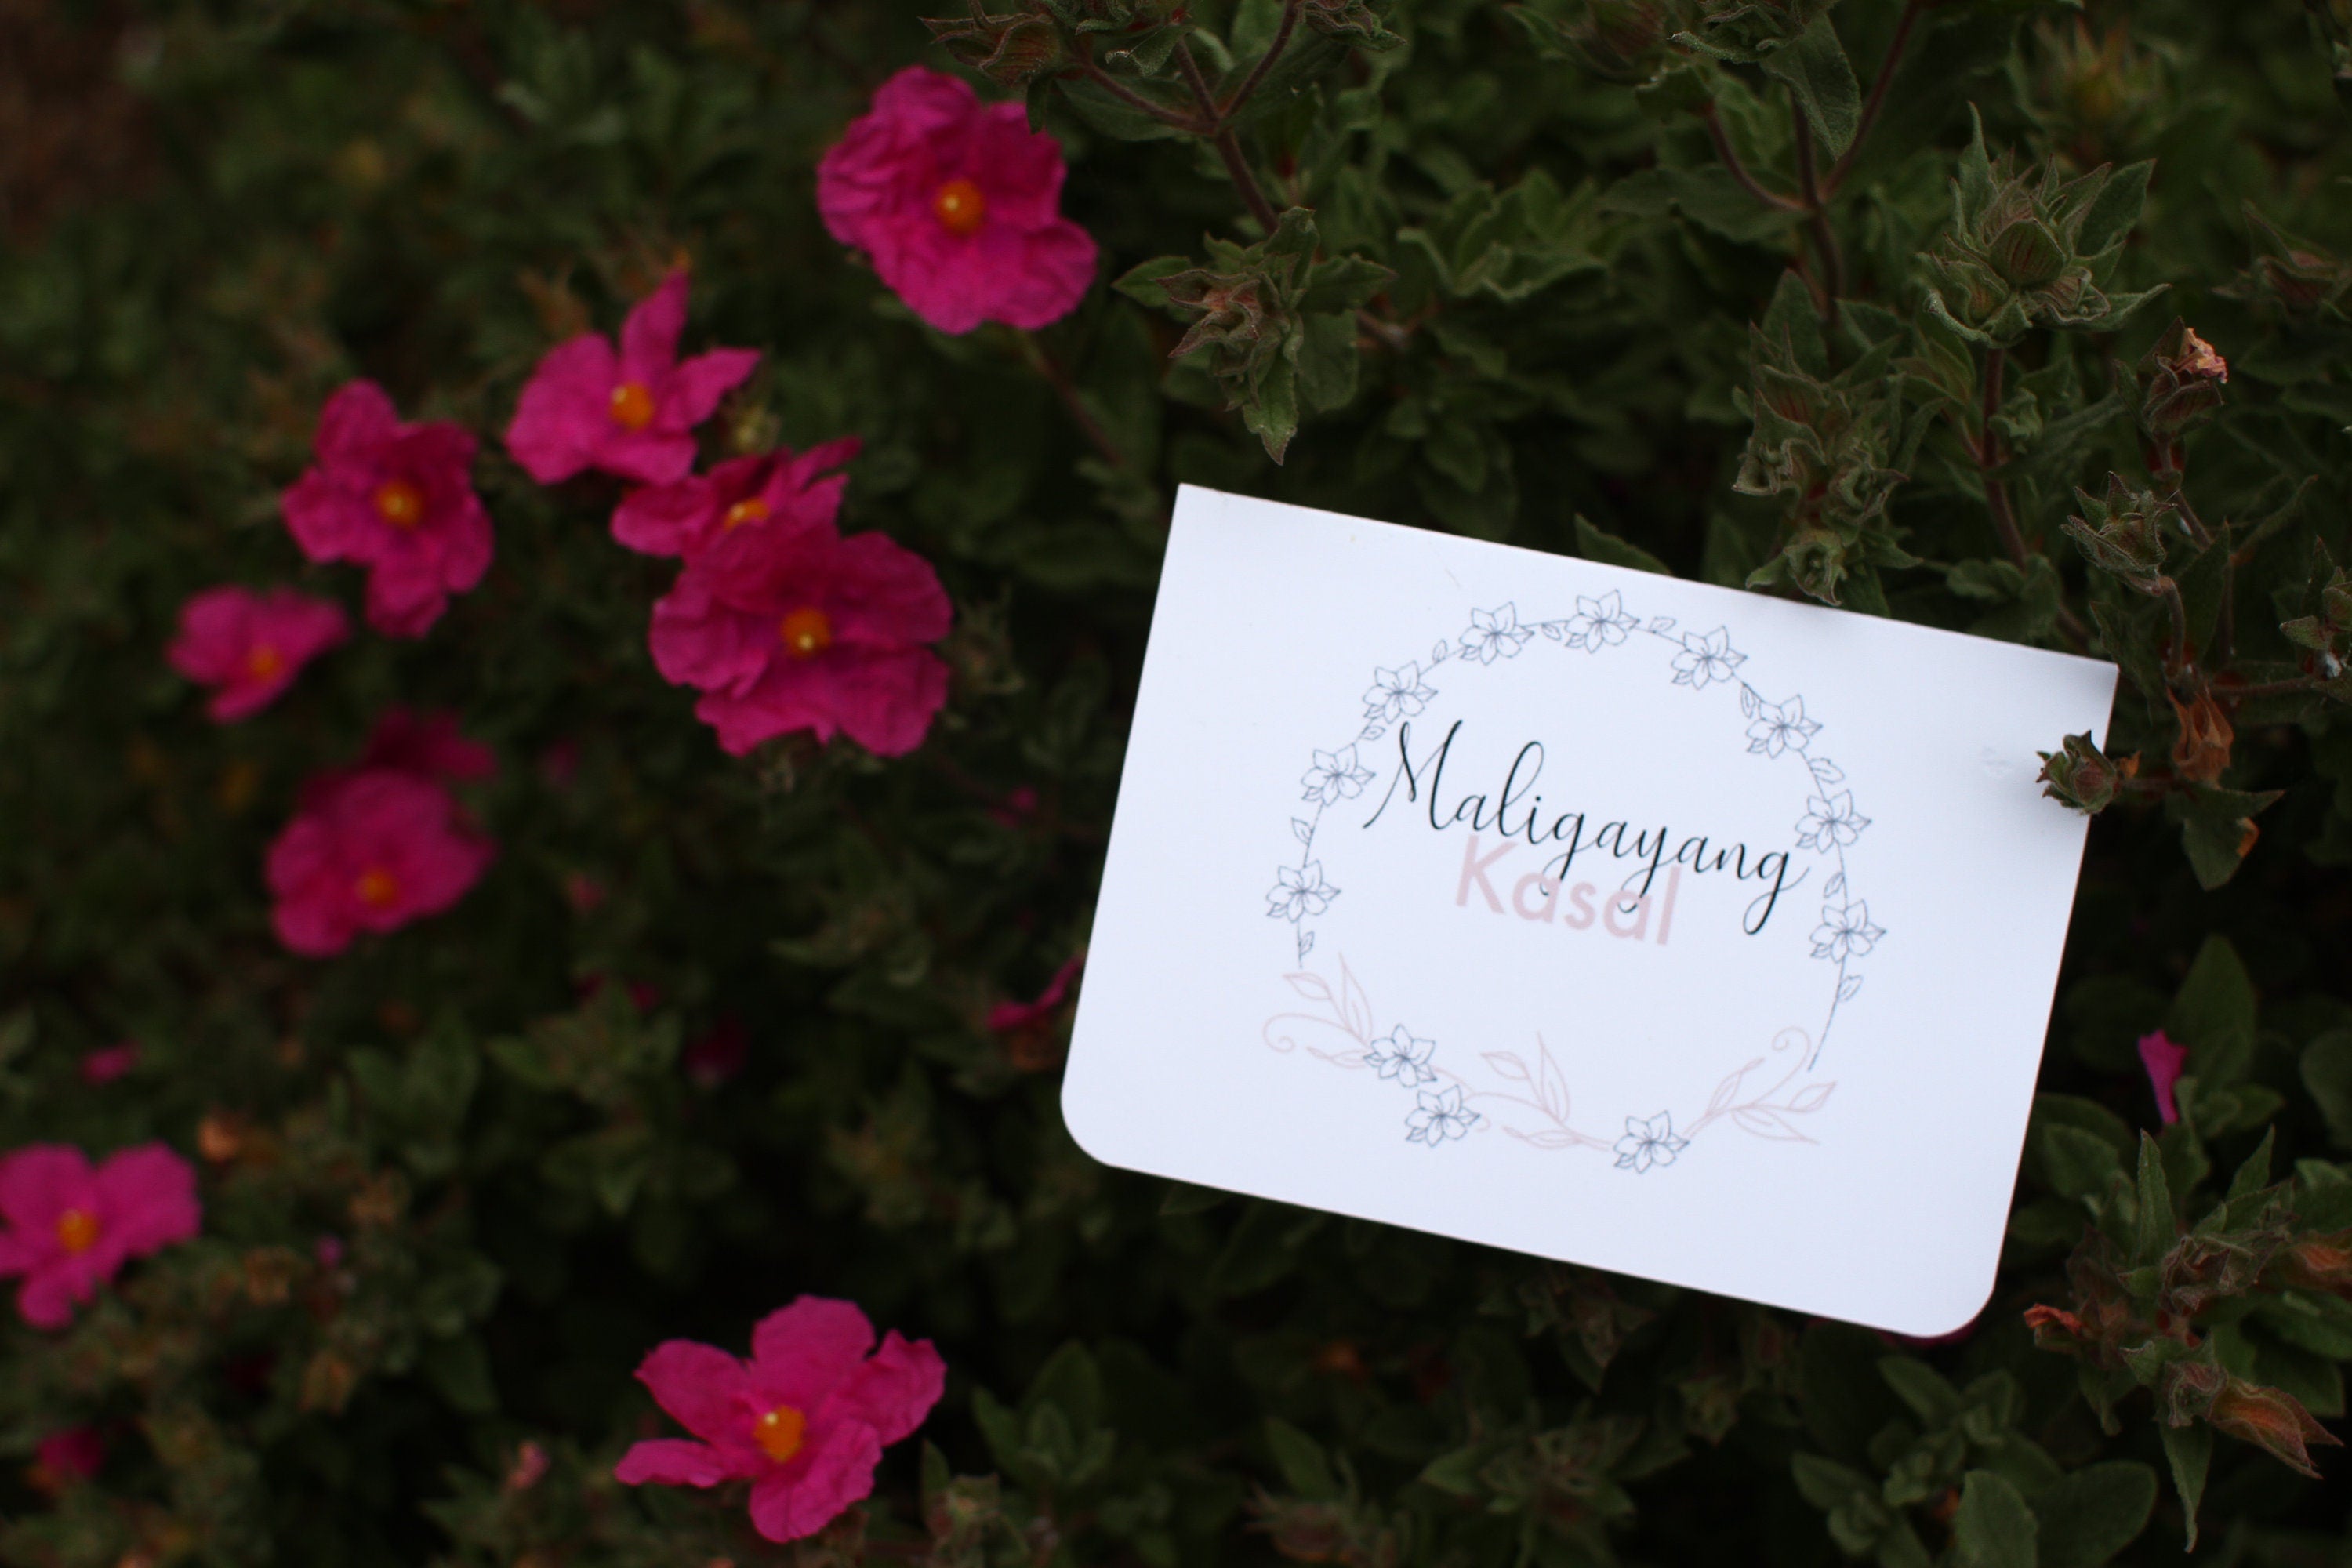 Mie Makes Maligayang Kasal Greeting Card, Homemade Card, Filipino Wedding Greeting Card, Happy Wedding, Philippines, Filipino American Wedding, Bride